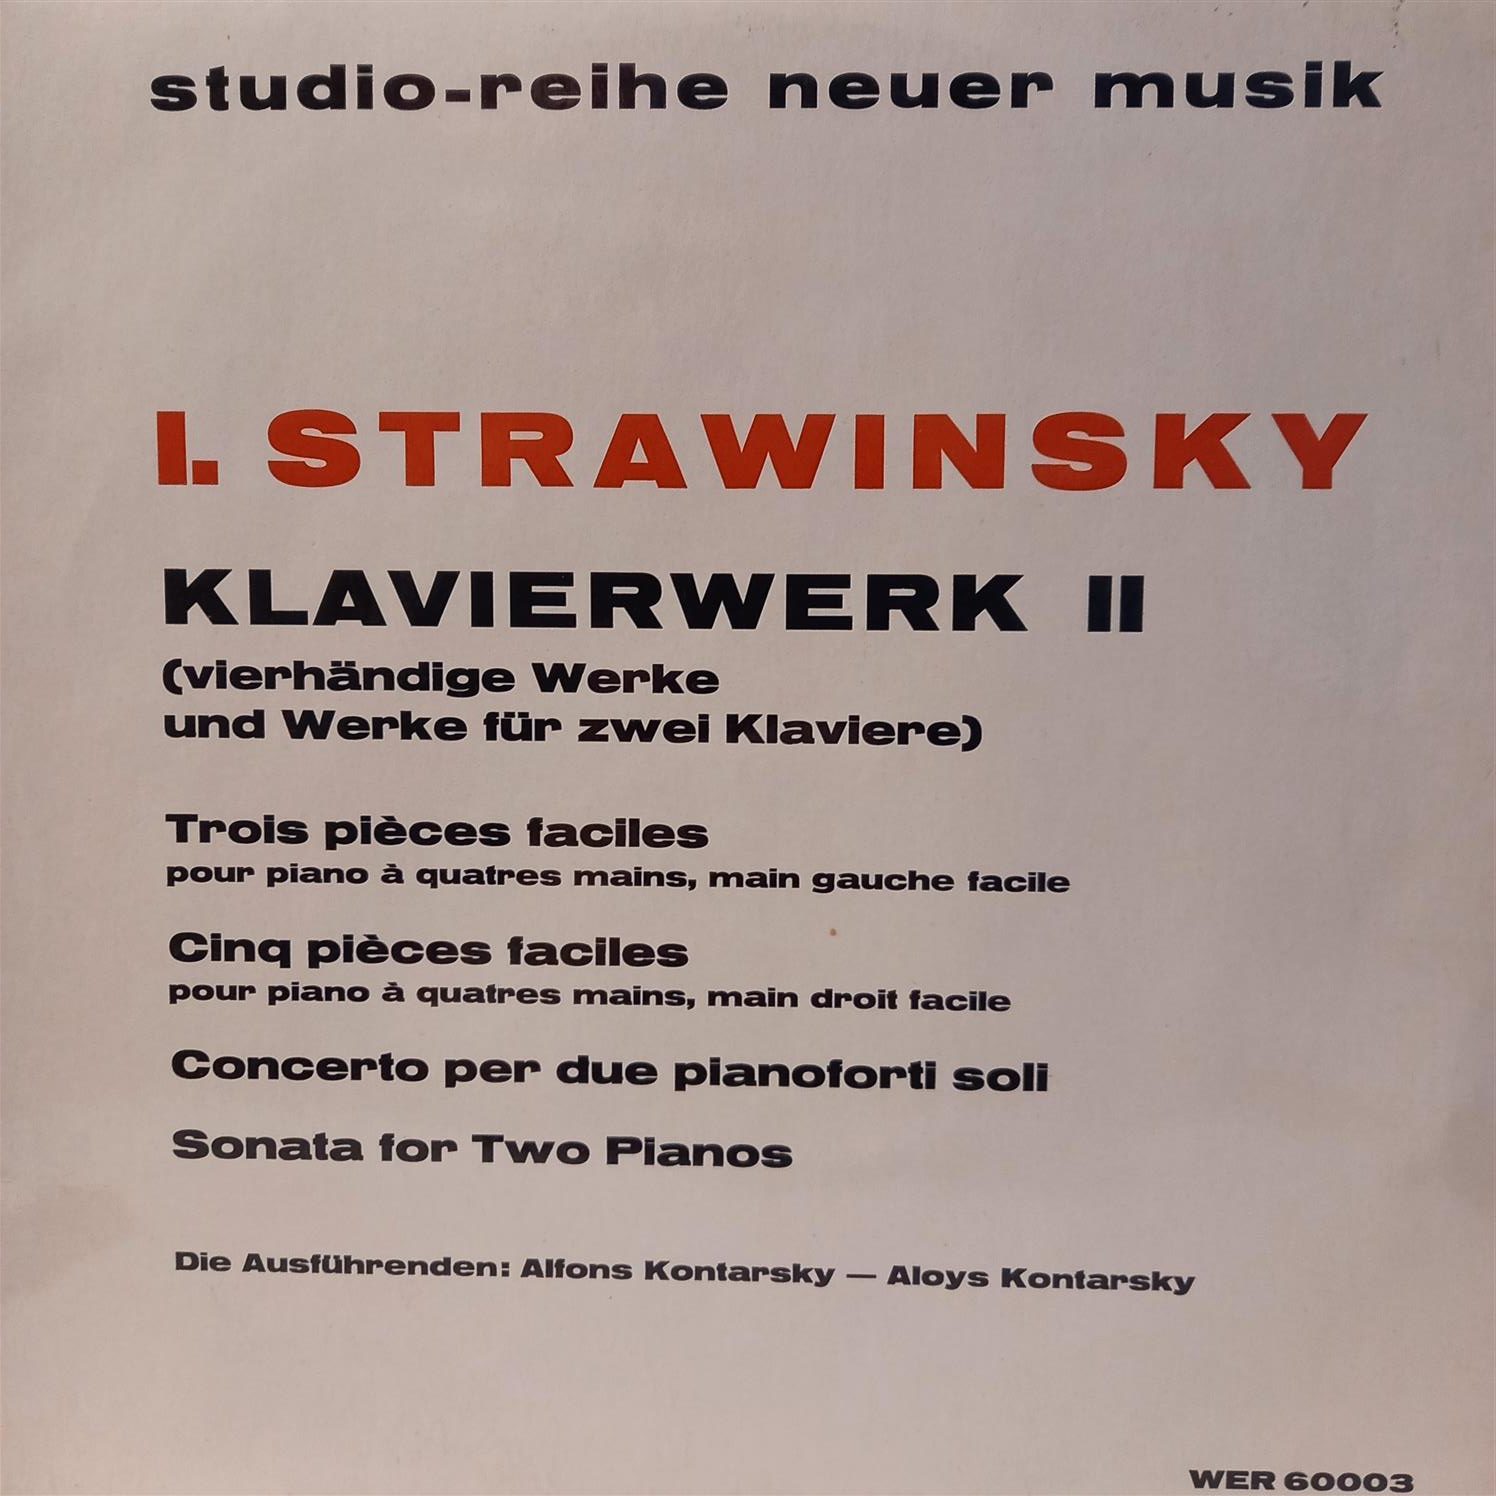 STRAVINSKY – KLAVIERWERK II ON